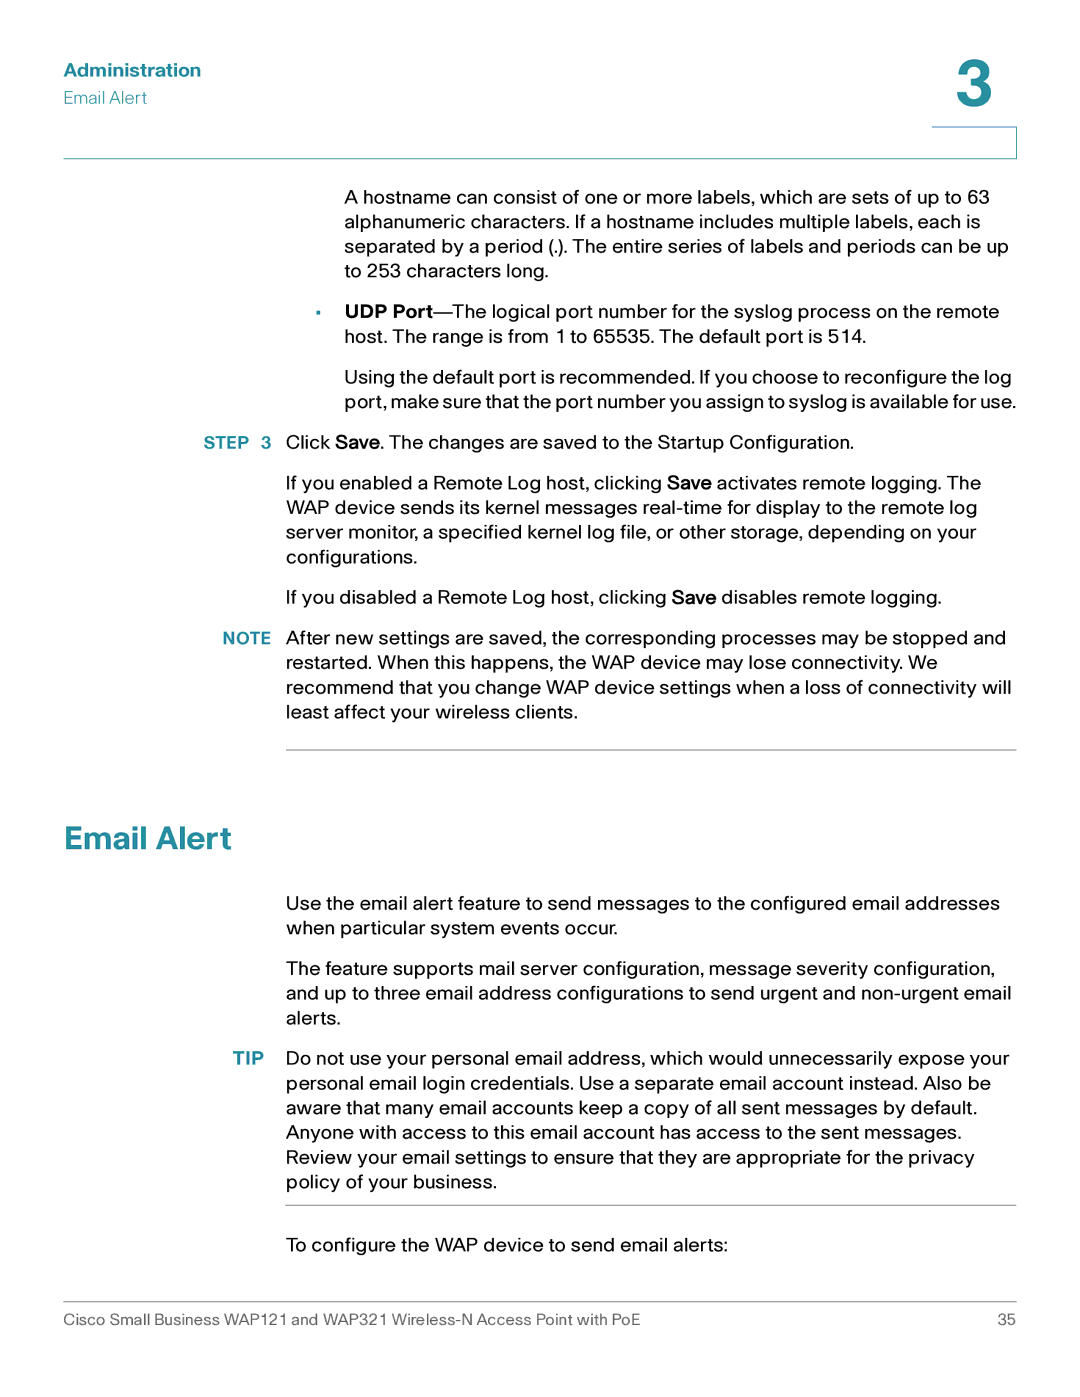 Cisco Systems WAP321, WAP121 manual Email Alert 